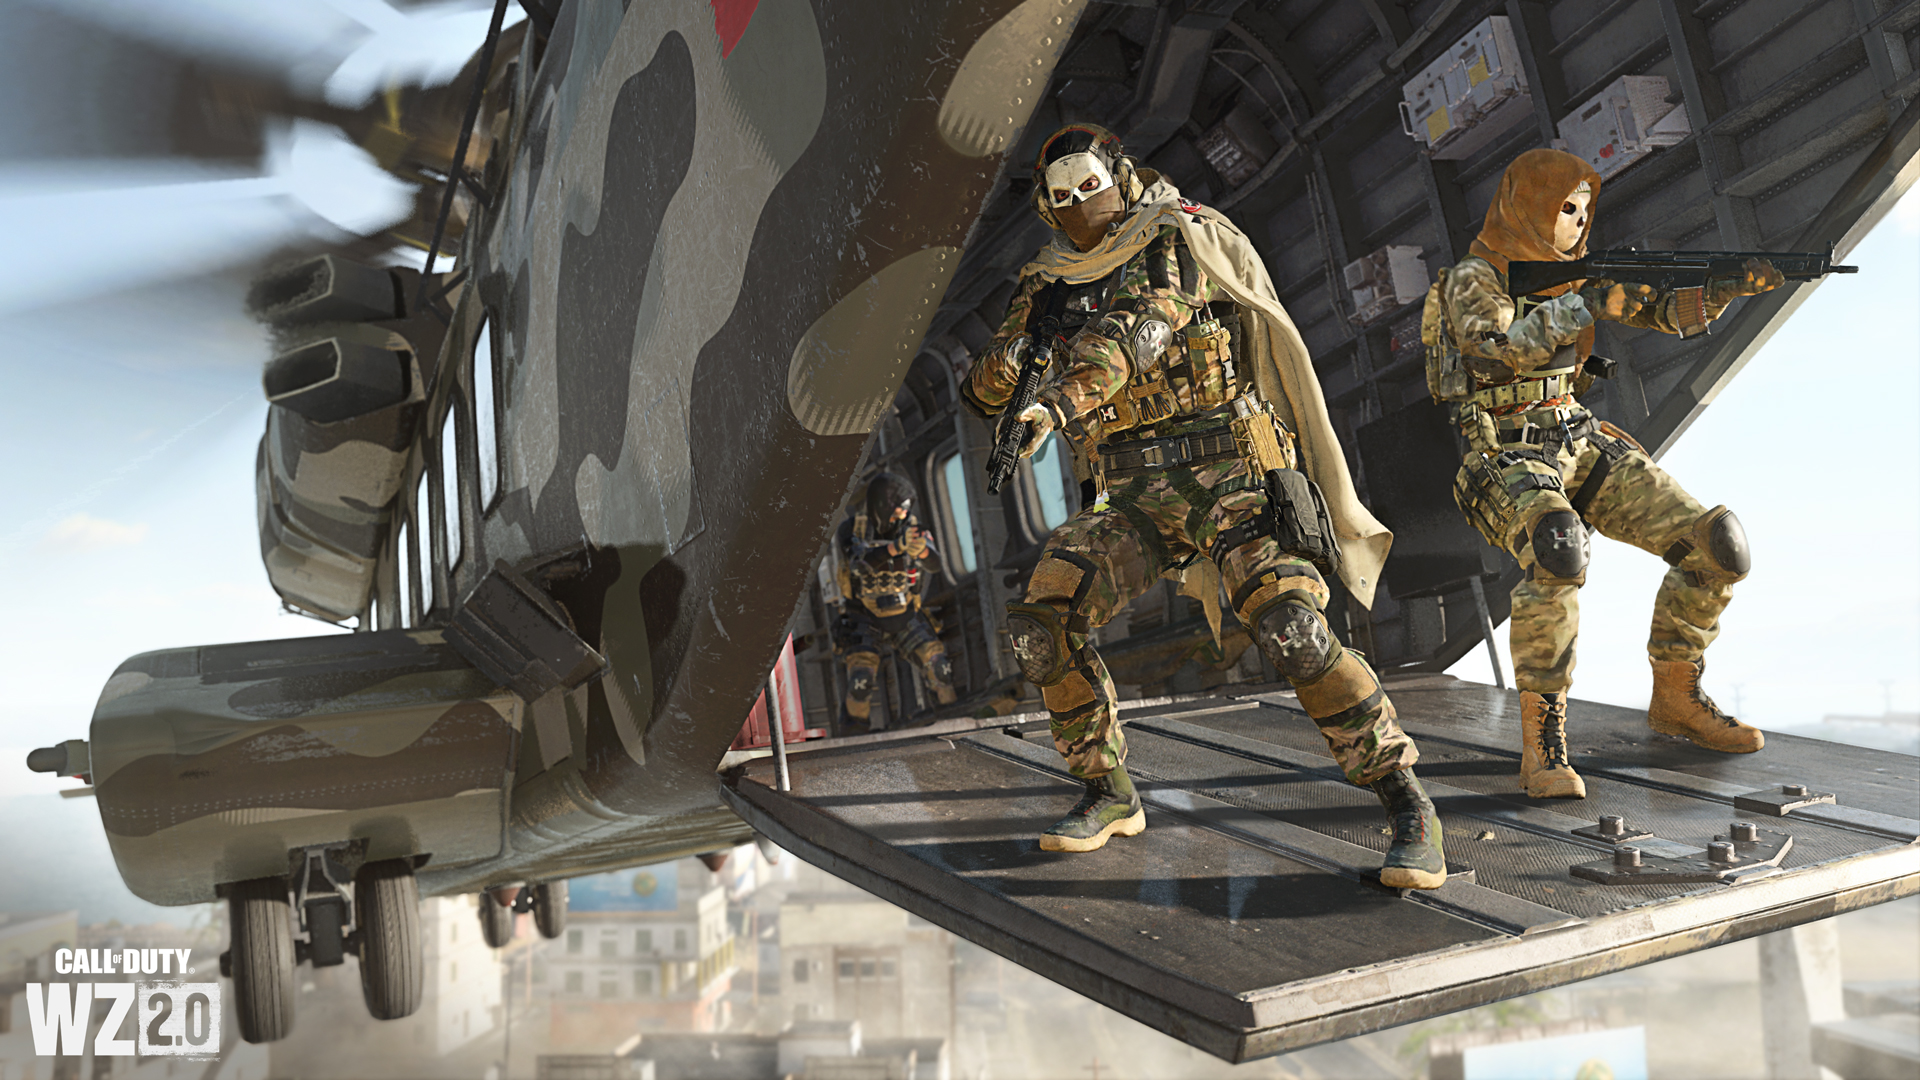 Постер для записи в блоге - Королевская битва от создателей Call of Duty может потерять всех игроков